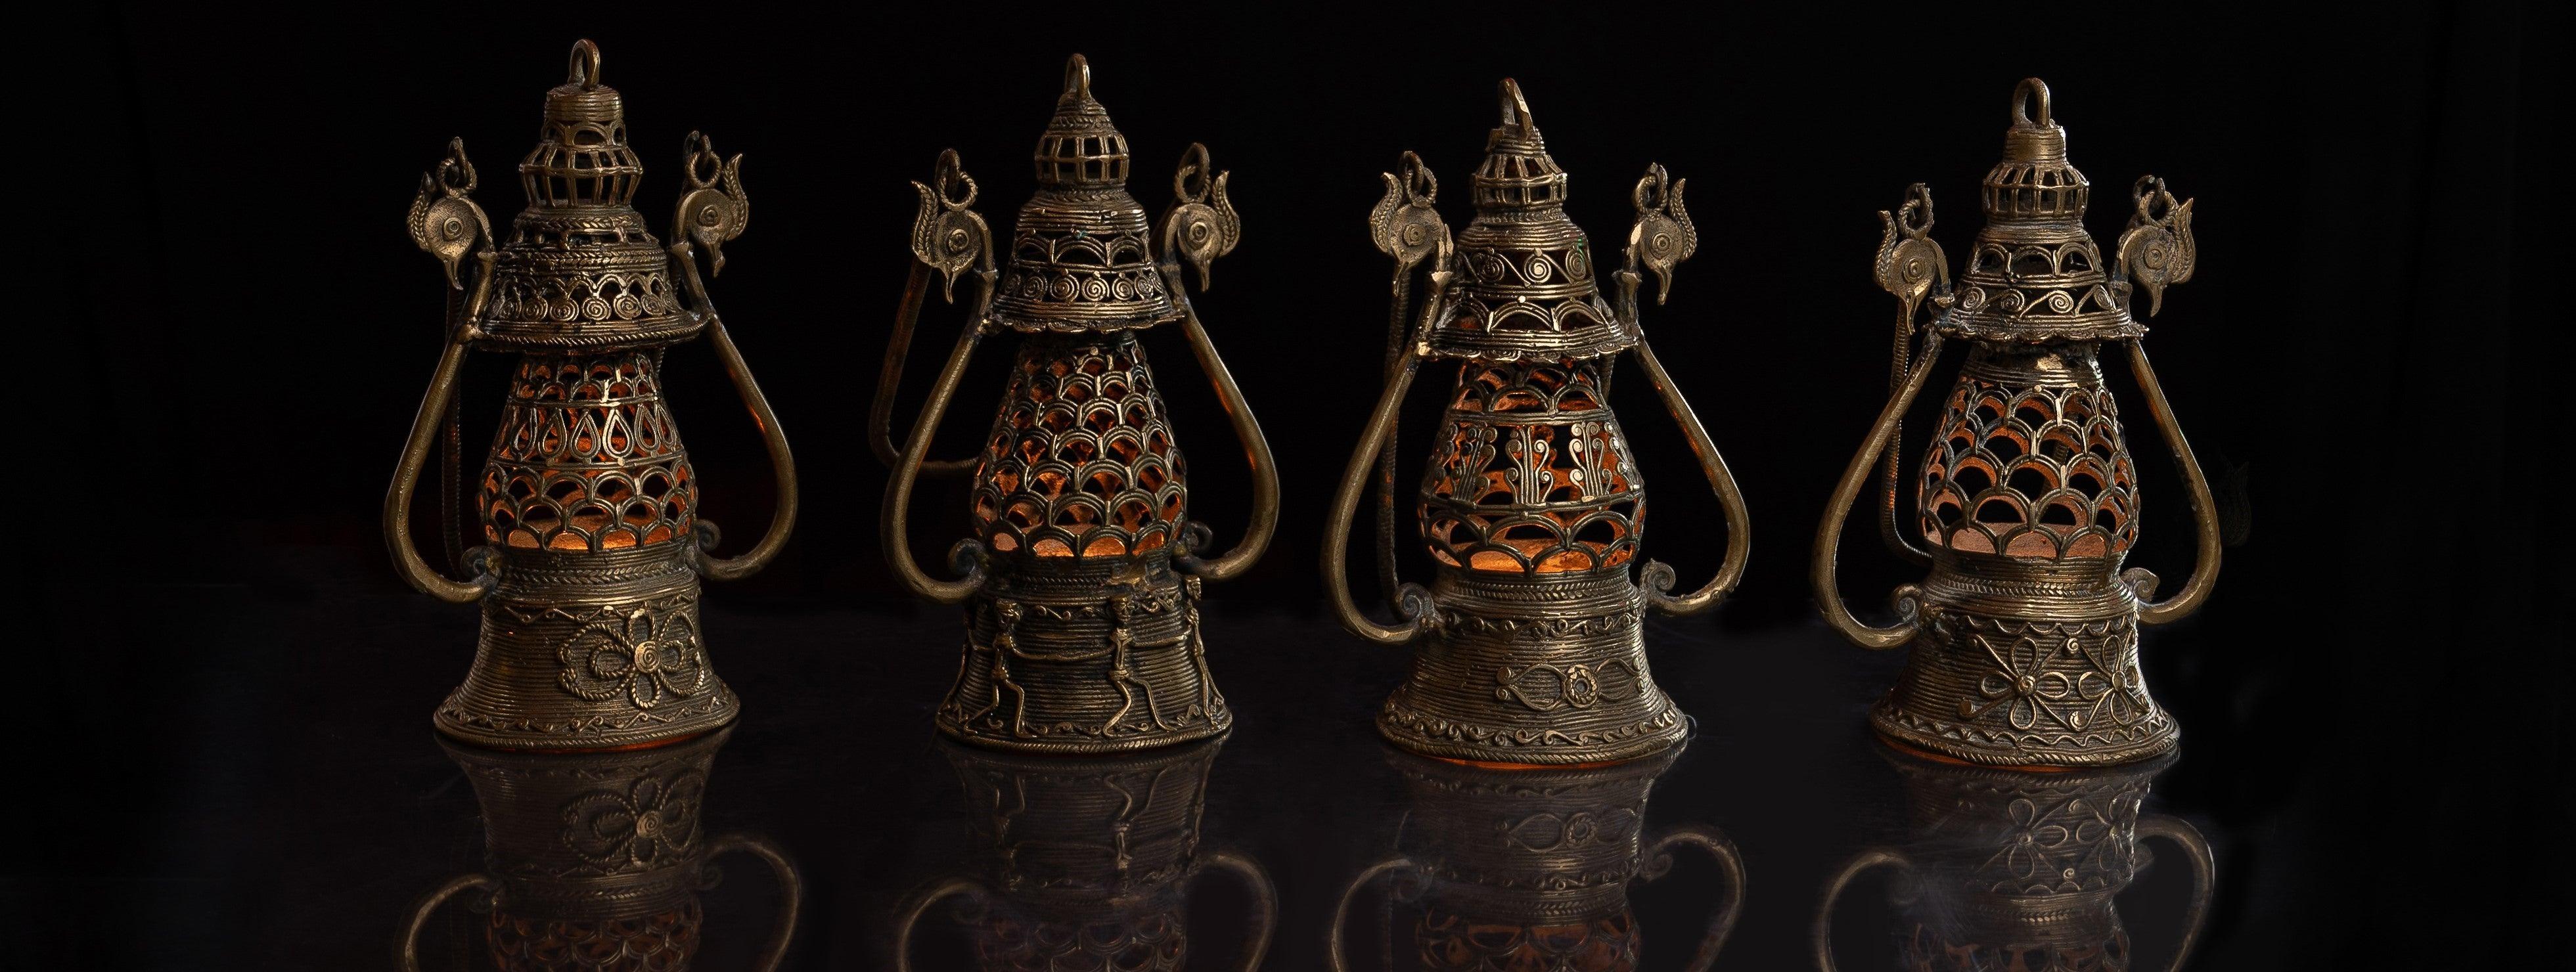 Dokra Handicraft - The Heritage Artifacts